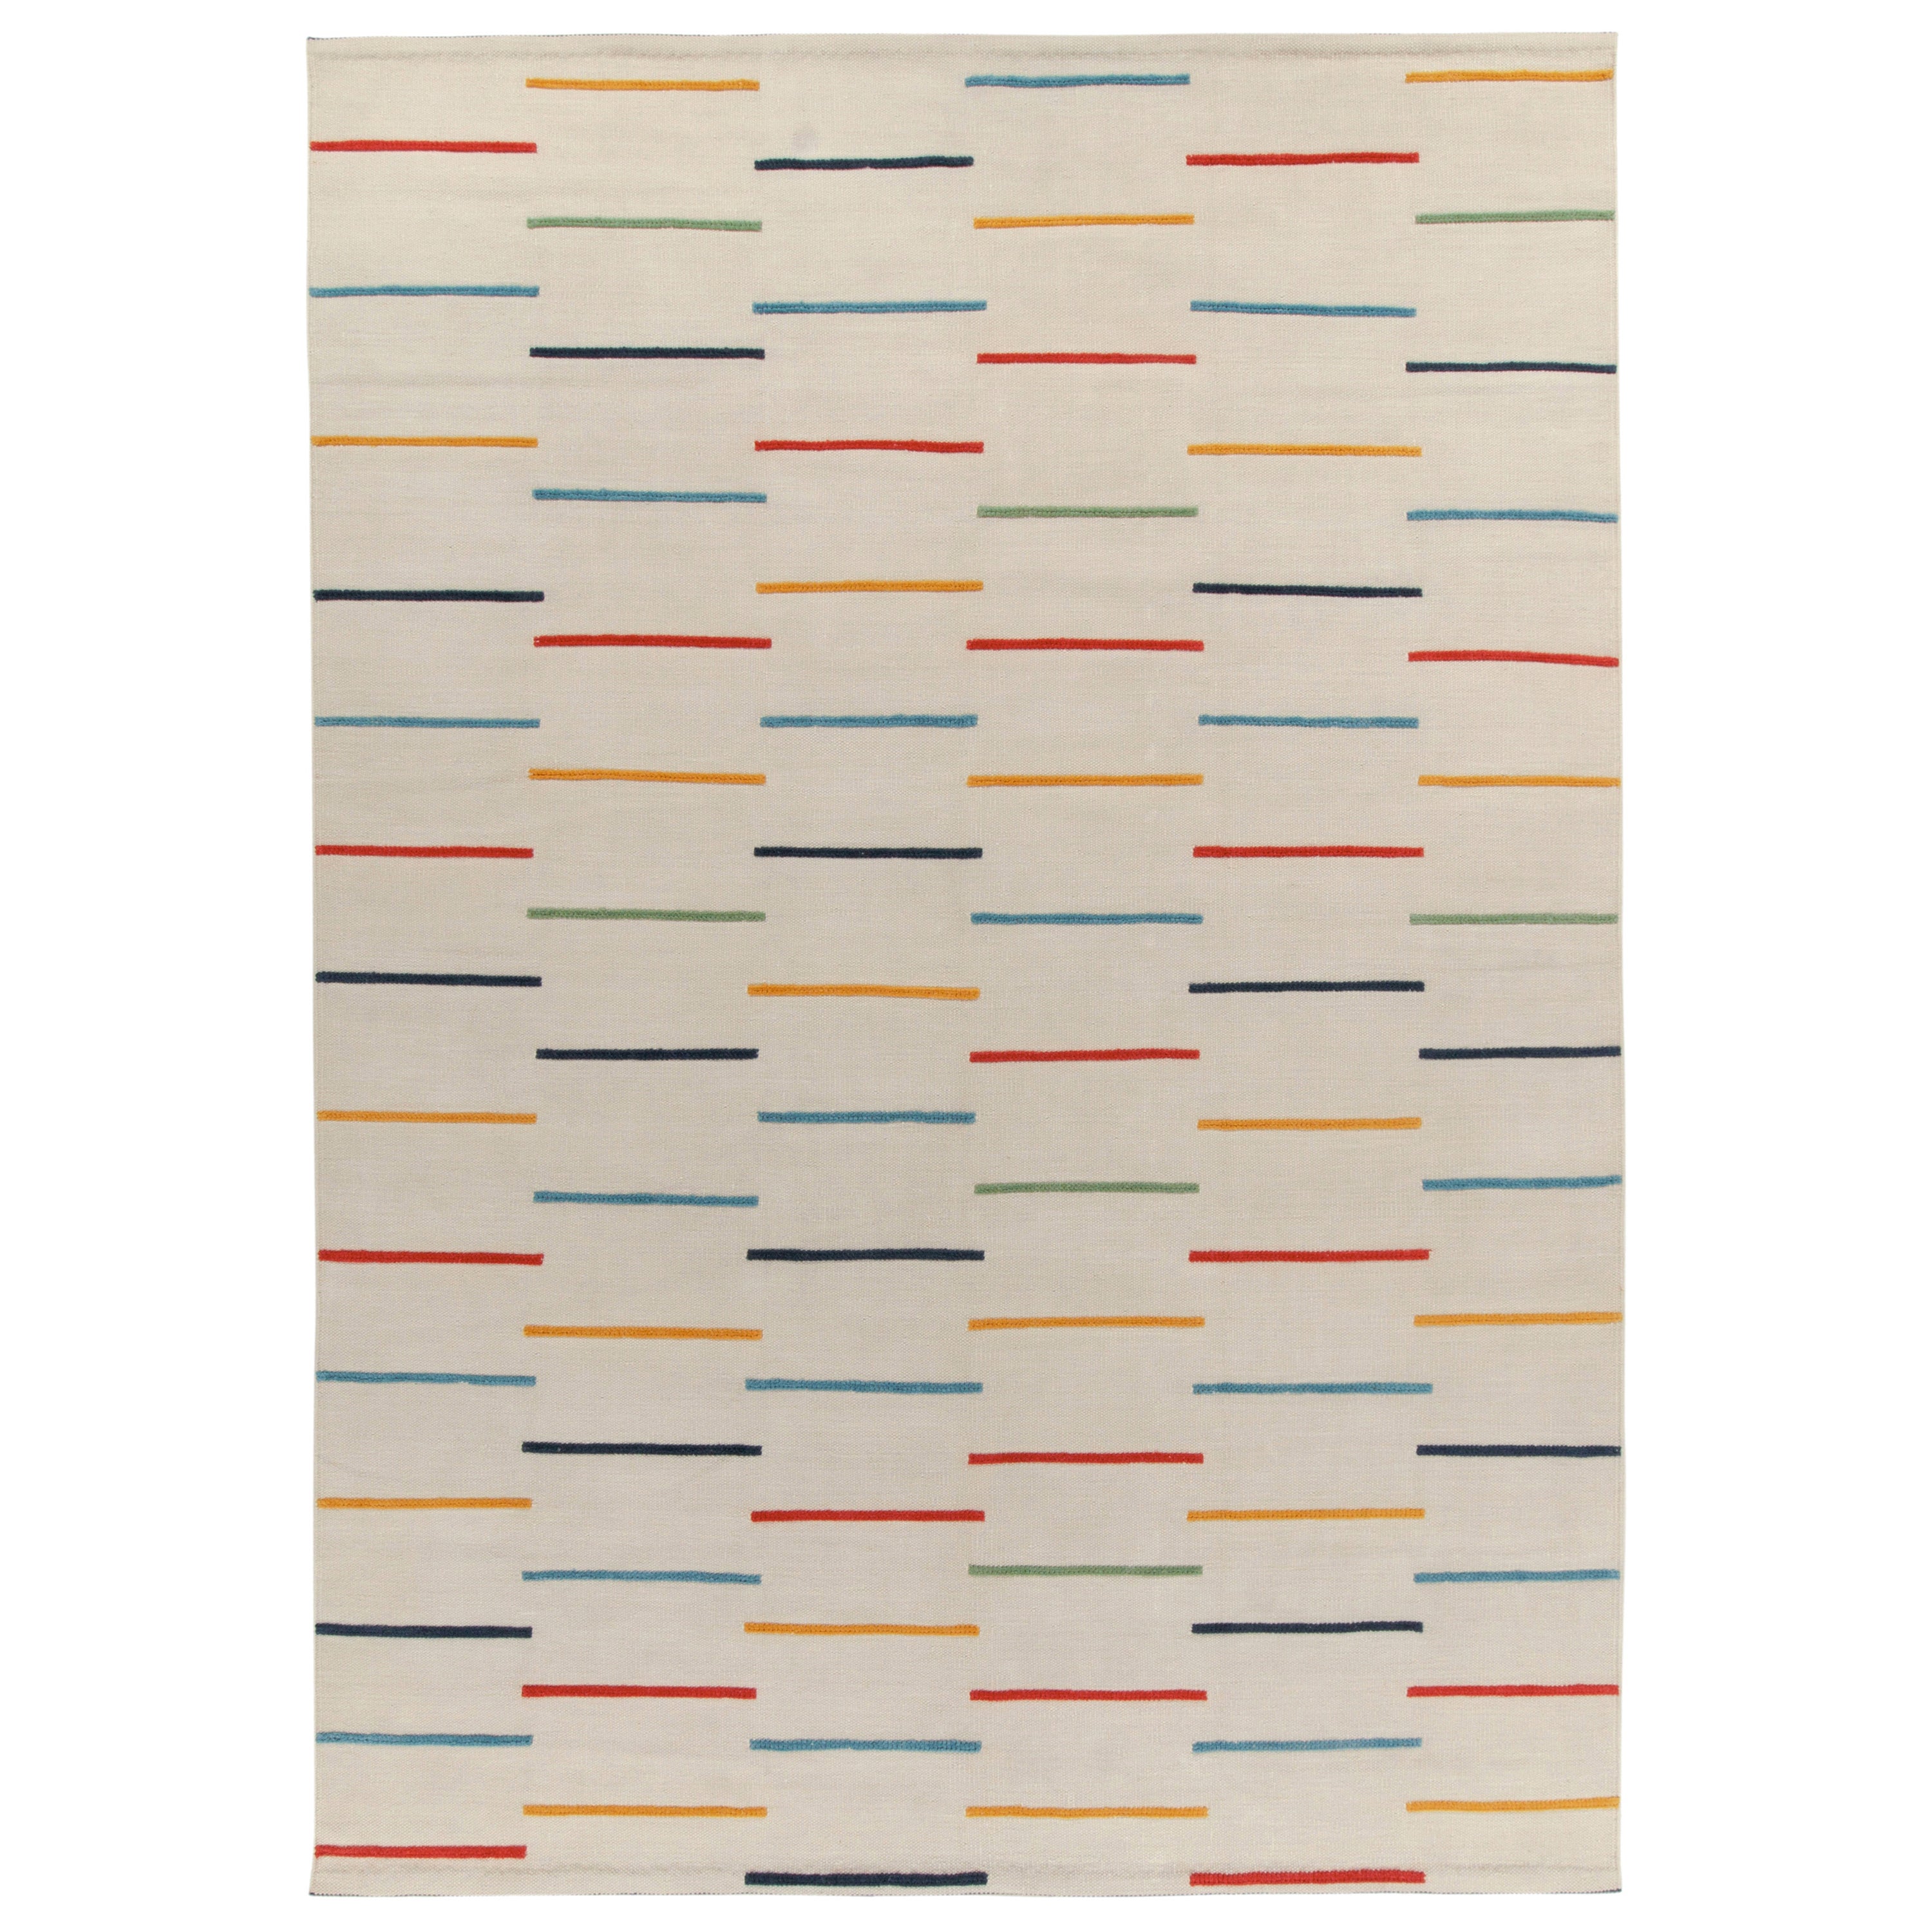 Tapis & Kilims - Kilim moderne sur mesure en stries multicolores sur blanc